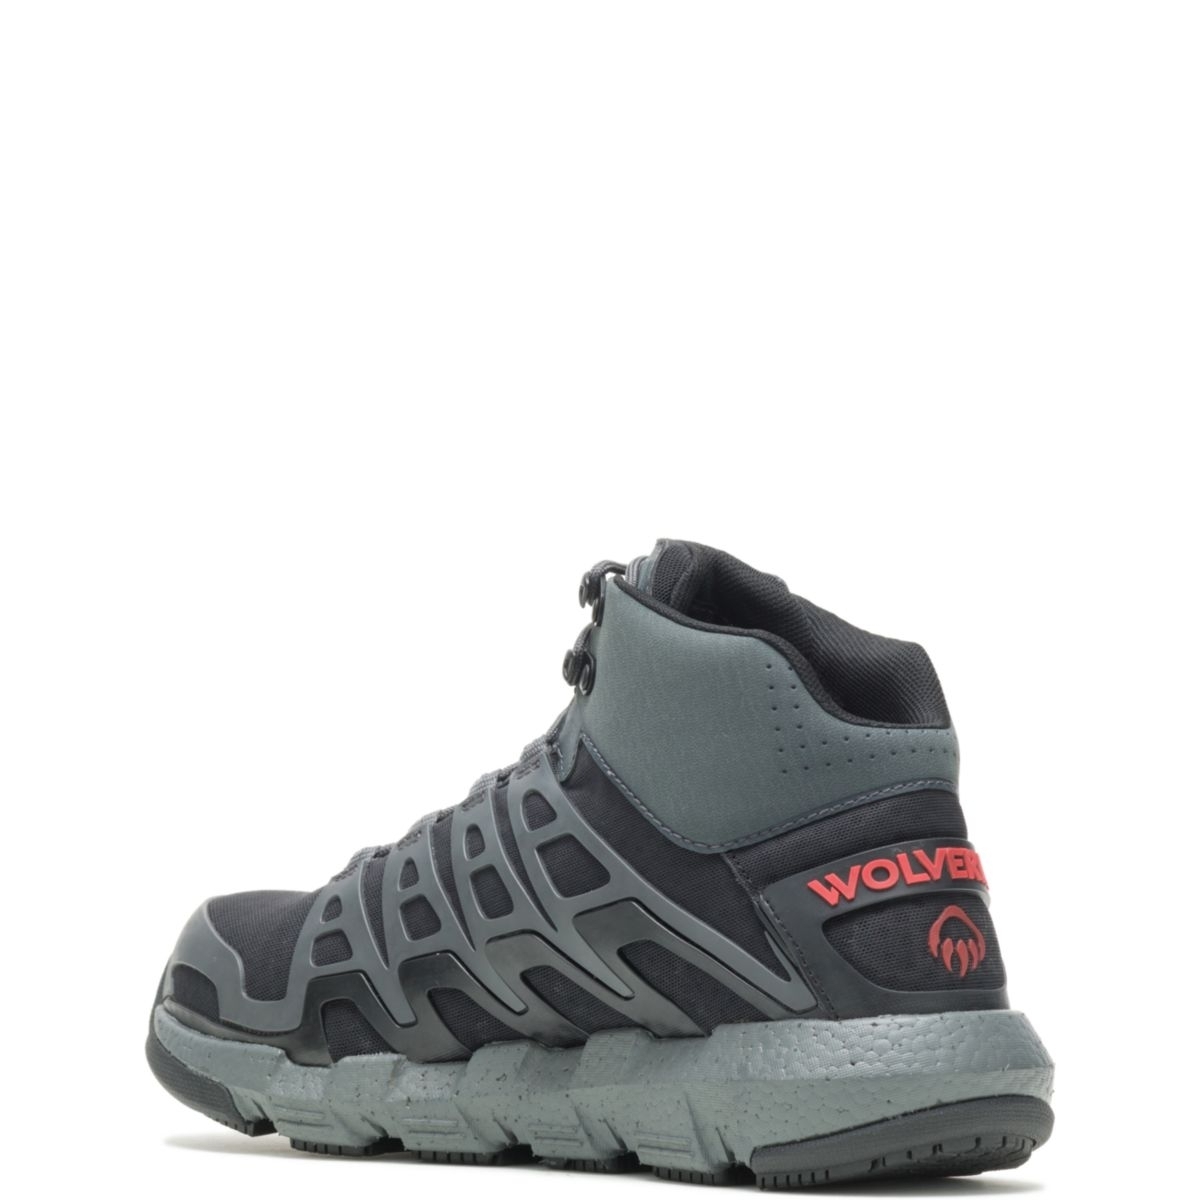 WOLVERINE Men's Rev Vent UltraSpringâ¢ DuraShocksÂ® CarbonMAXÂ® Composite Toe Work Boot Charcoal/Red - W211018 Charcoal/Red - Charcoal/Red, 10